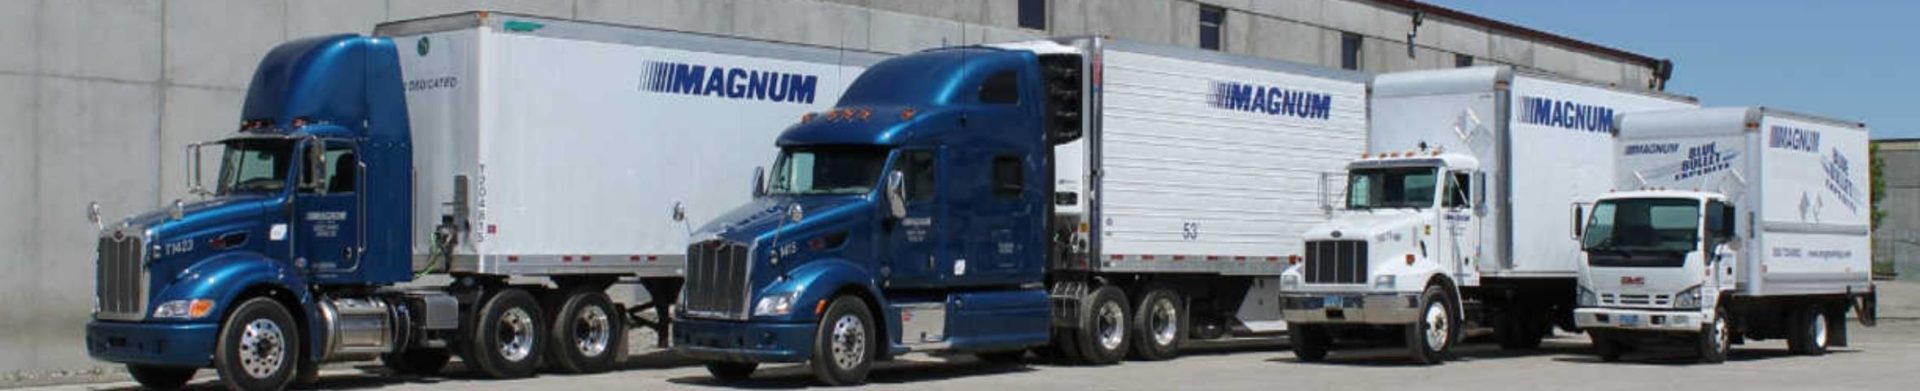 some Magnum Logistics trucks